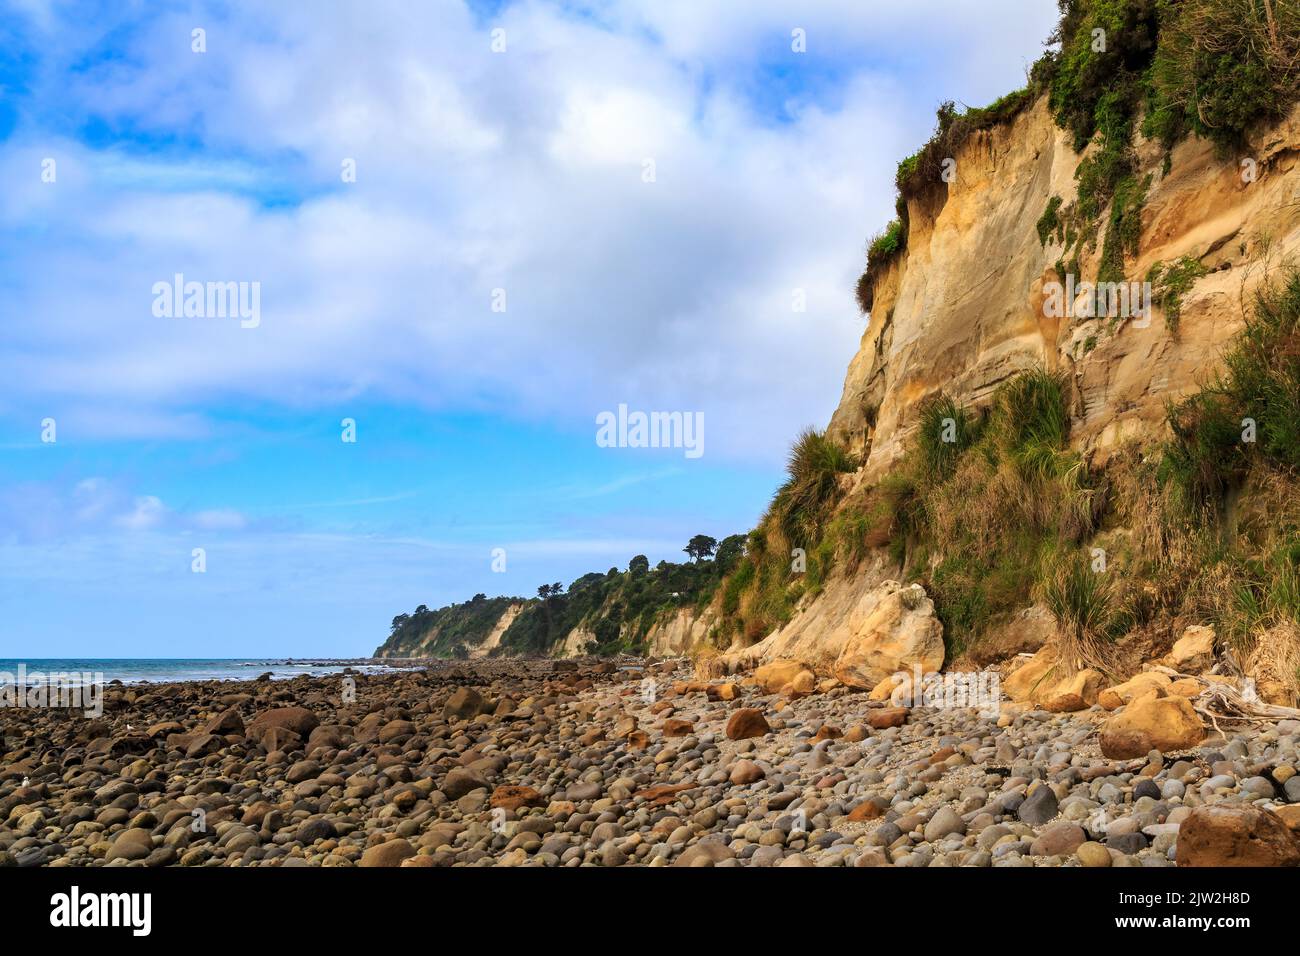 Coastal cliffs and a stony beach at Maketu in the Bay of Plenty, New Zealand Stock Photo